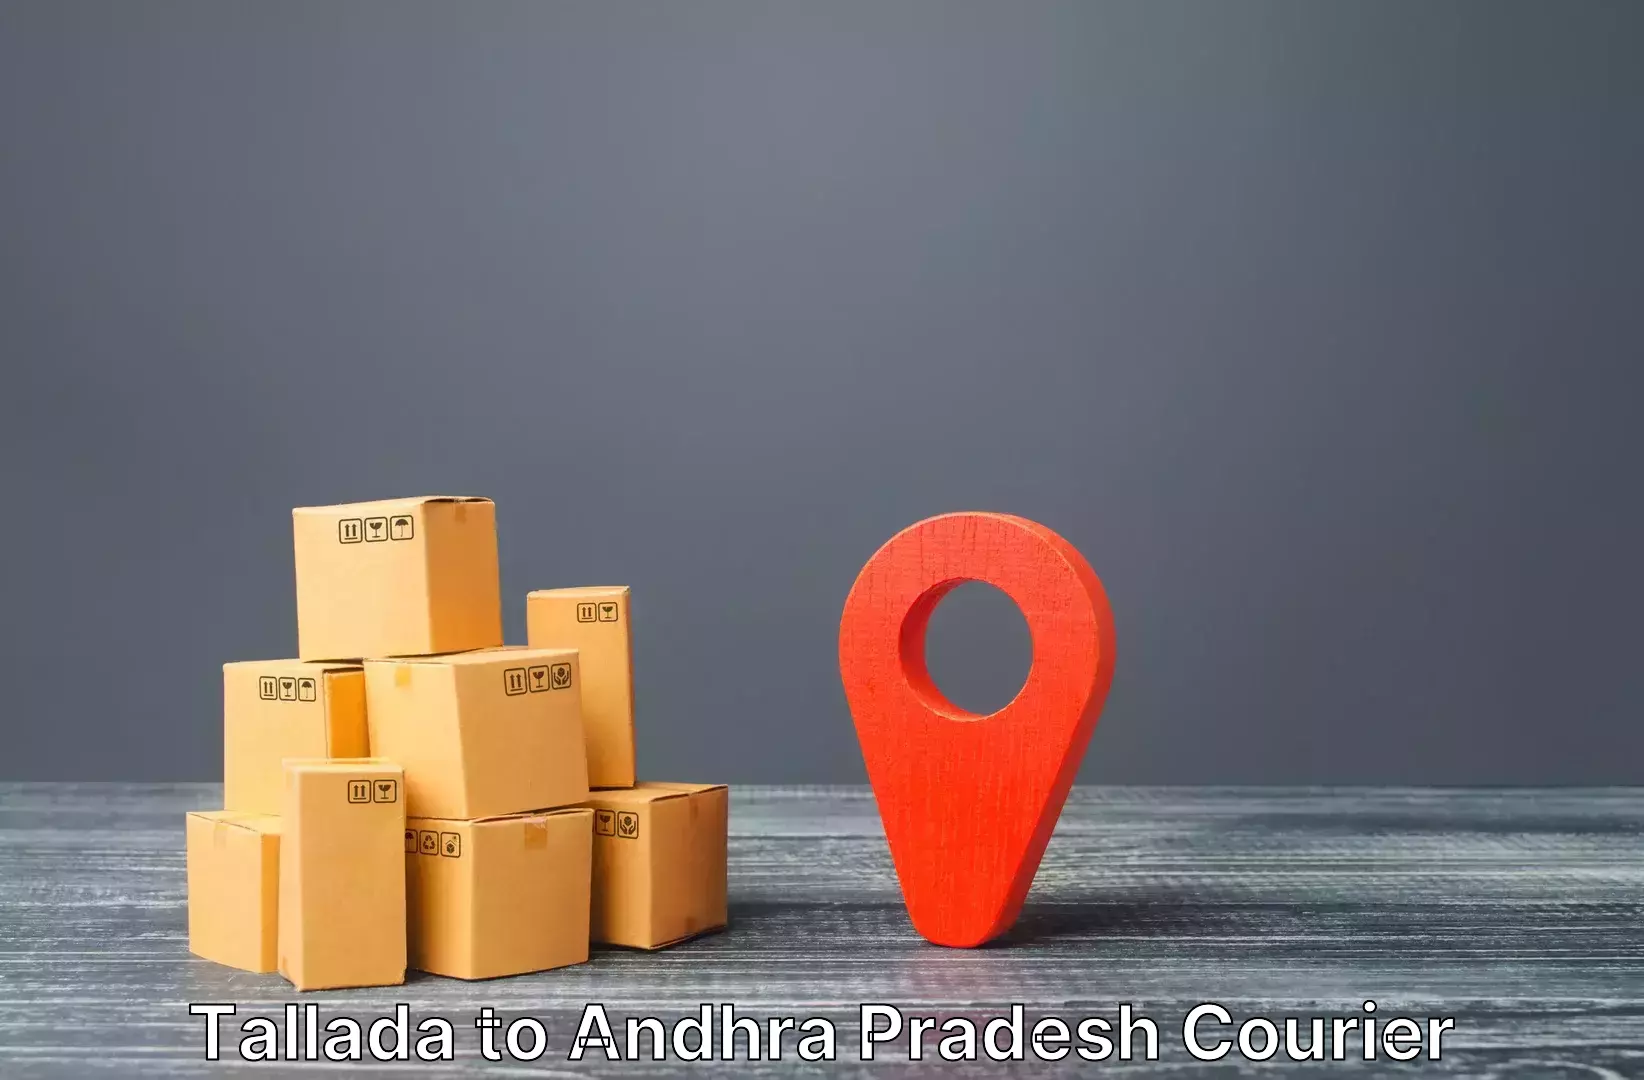 Luggage transport logistics in Tallada to Krishna AP